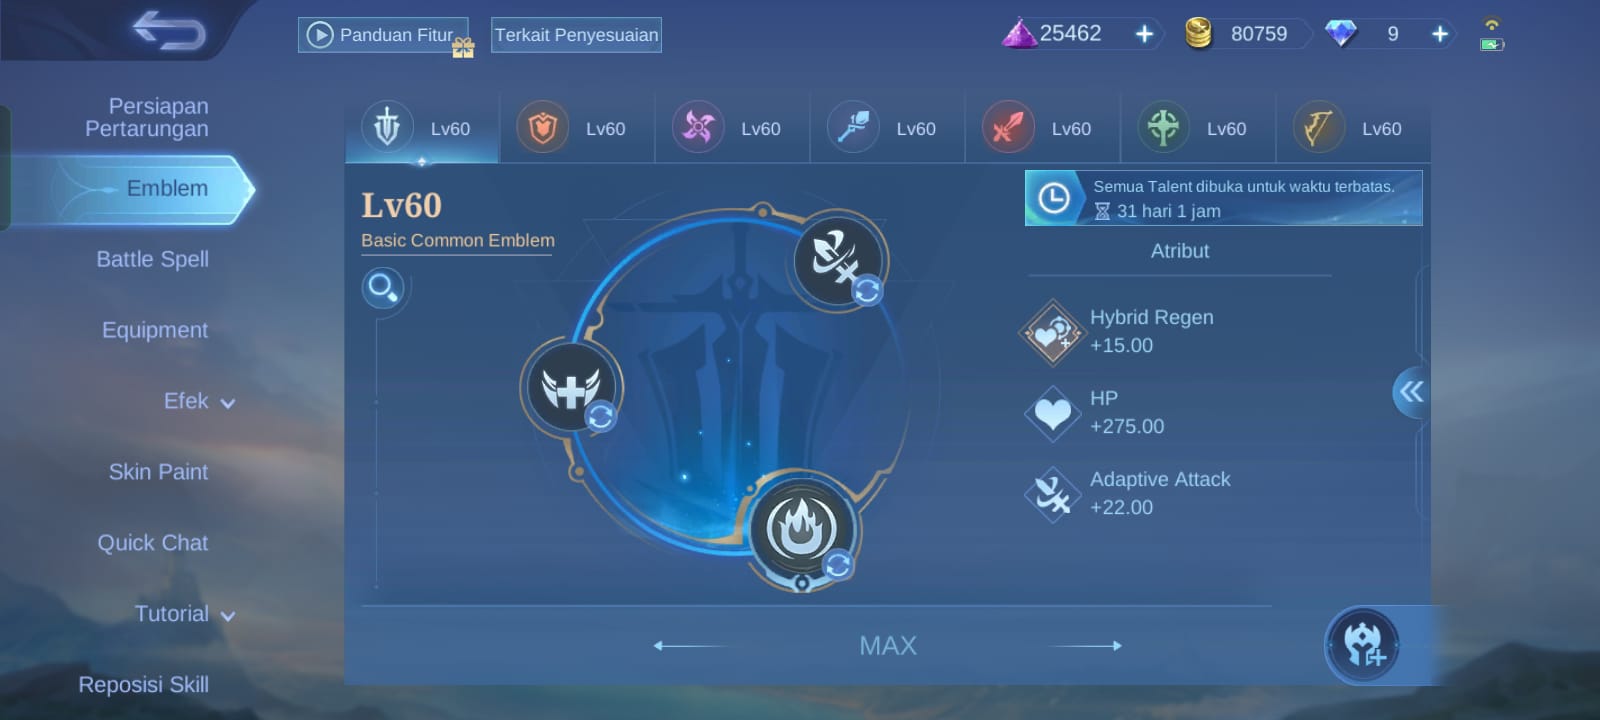 Penjelasan Sistem Emblem Terbaru di Mobile Legends